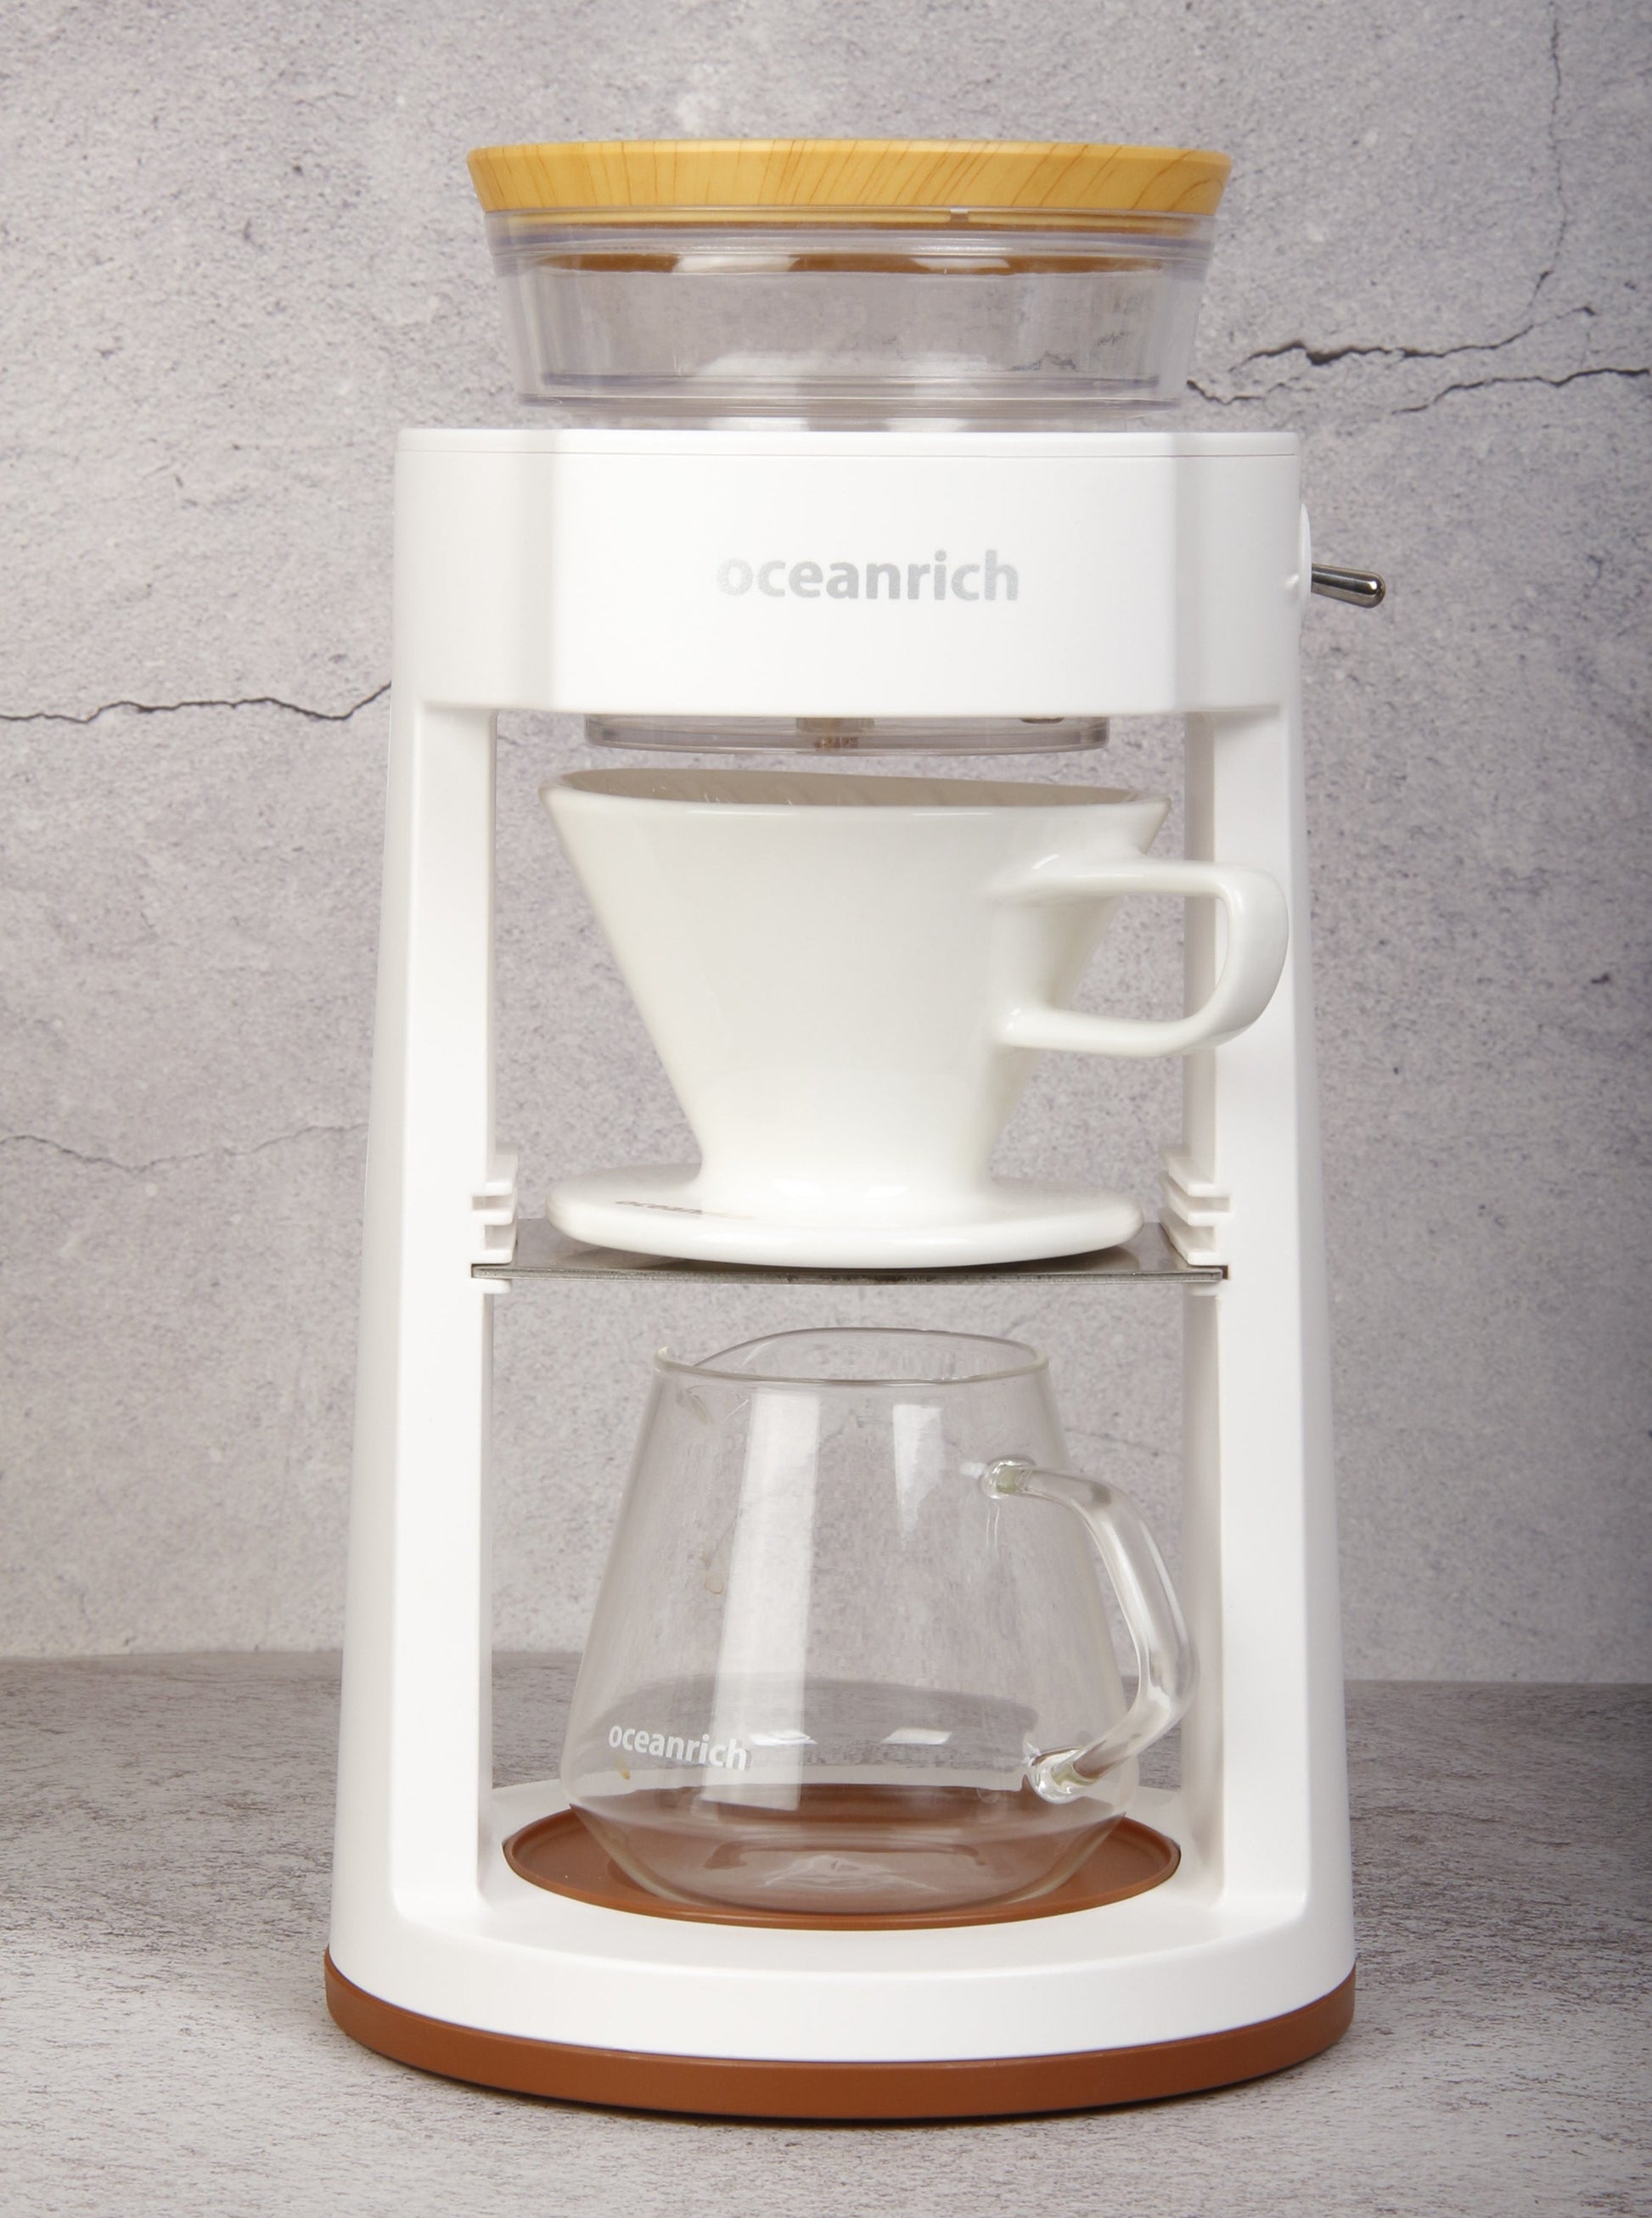 أطلب الان جهاز القهوة المقطرة أداة التقطير الذاتية من أوشن ريتش oceanrich واستمتع بأفضل قهوة